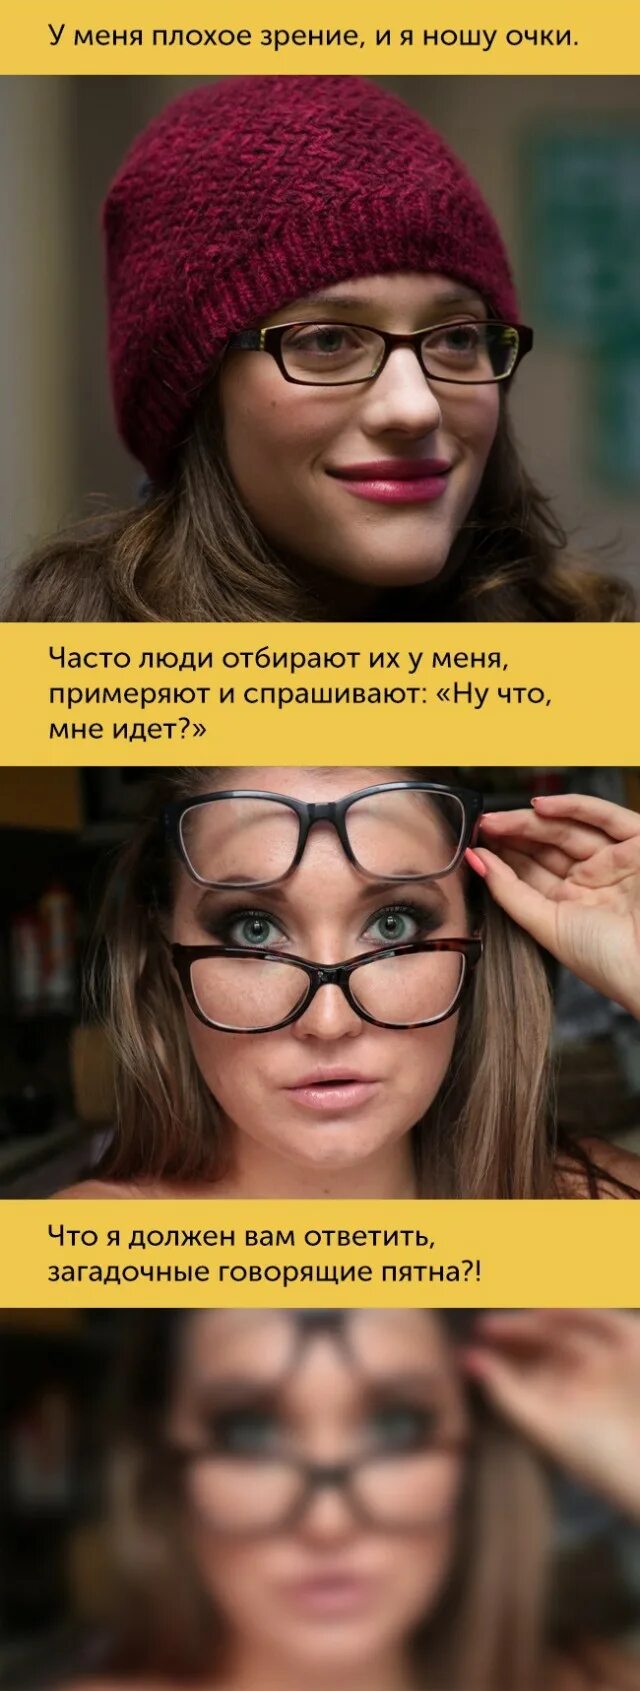 Люди носящие очки знают что когда входишь. Приколы про плохое зрение. Мемы про людей с плохим зрением. Человек с близорукостью. Человек с плохим зрением прикол.